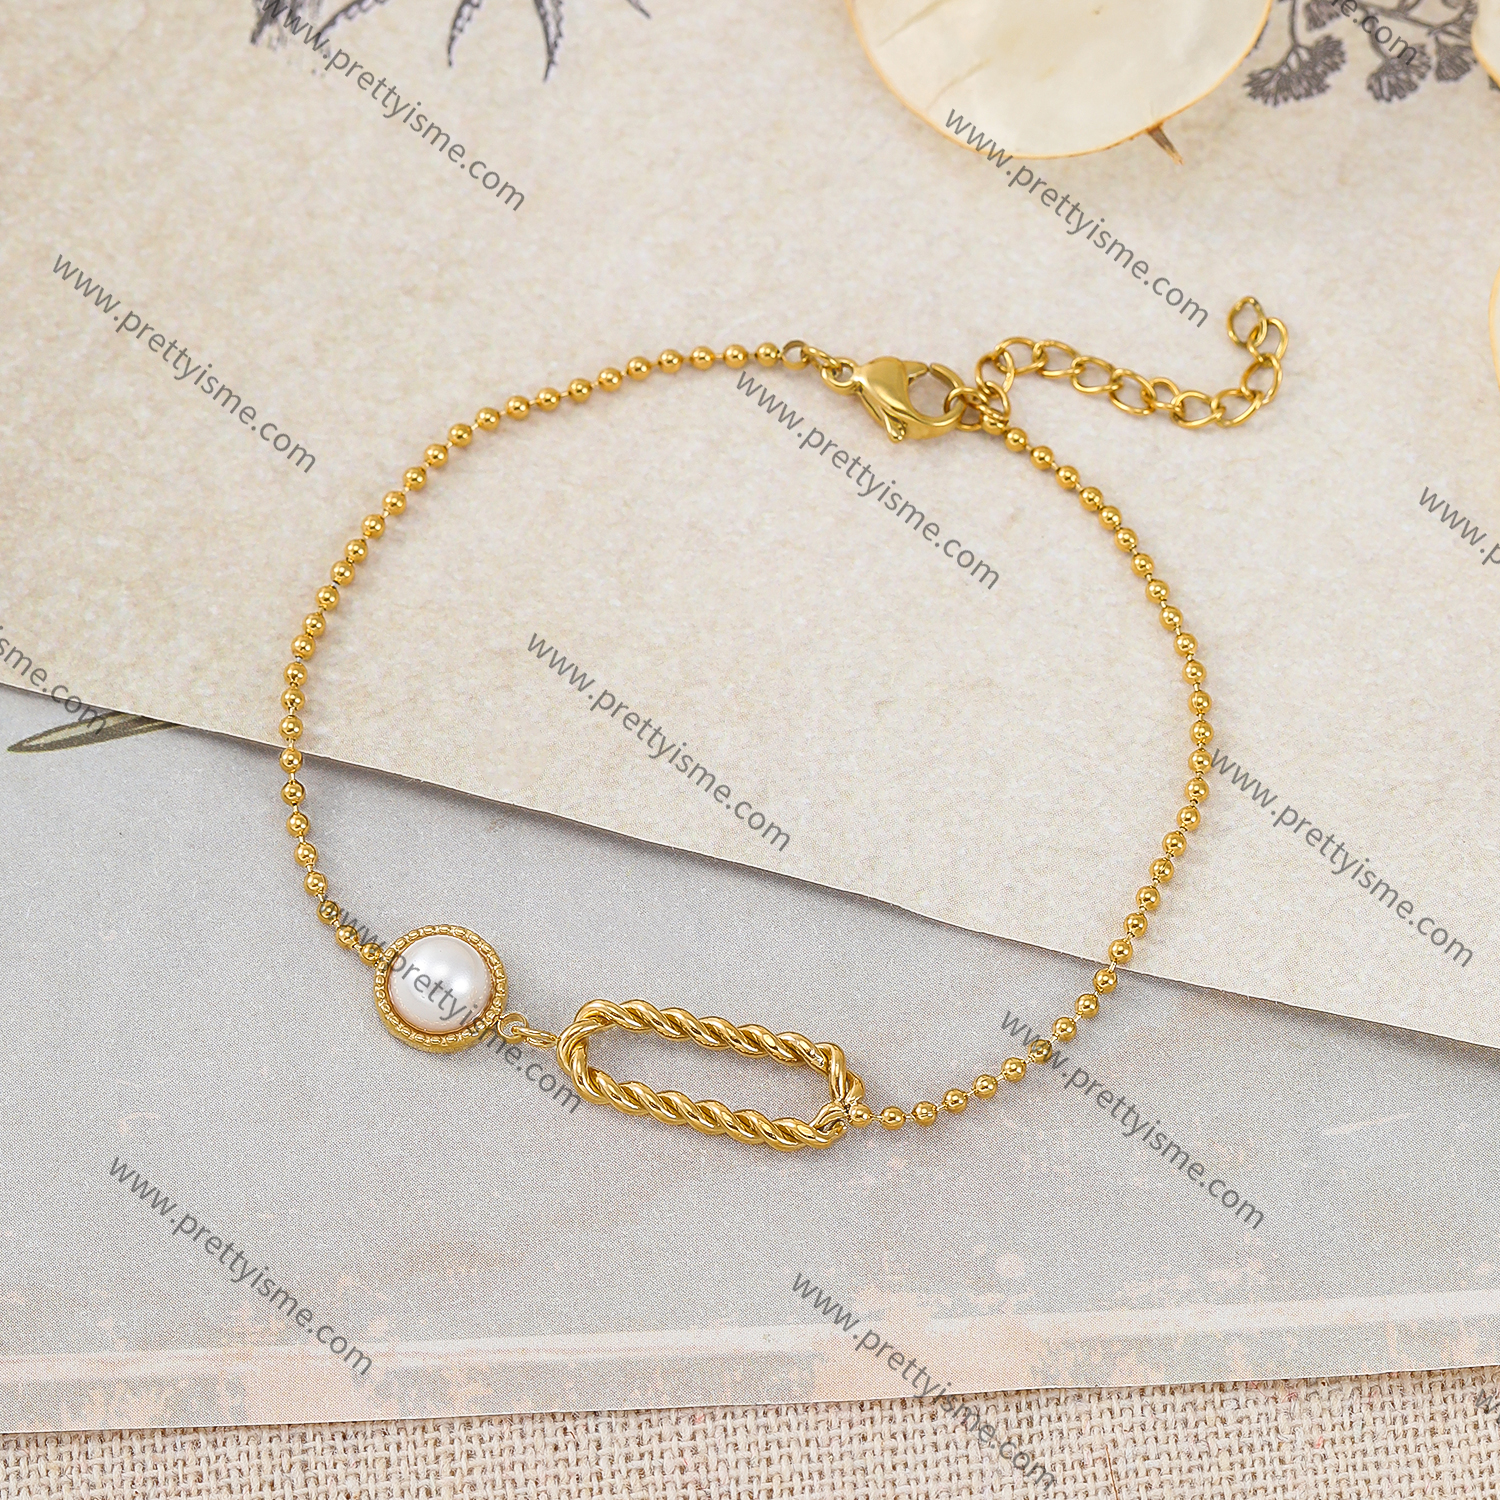 Thin Stainless Steel Bracelet 18K Gold Plated Elegant Bracelet with White Gemstones (2).webp